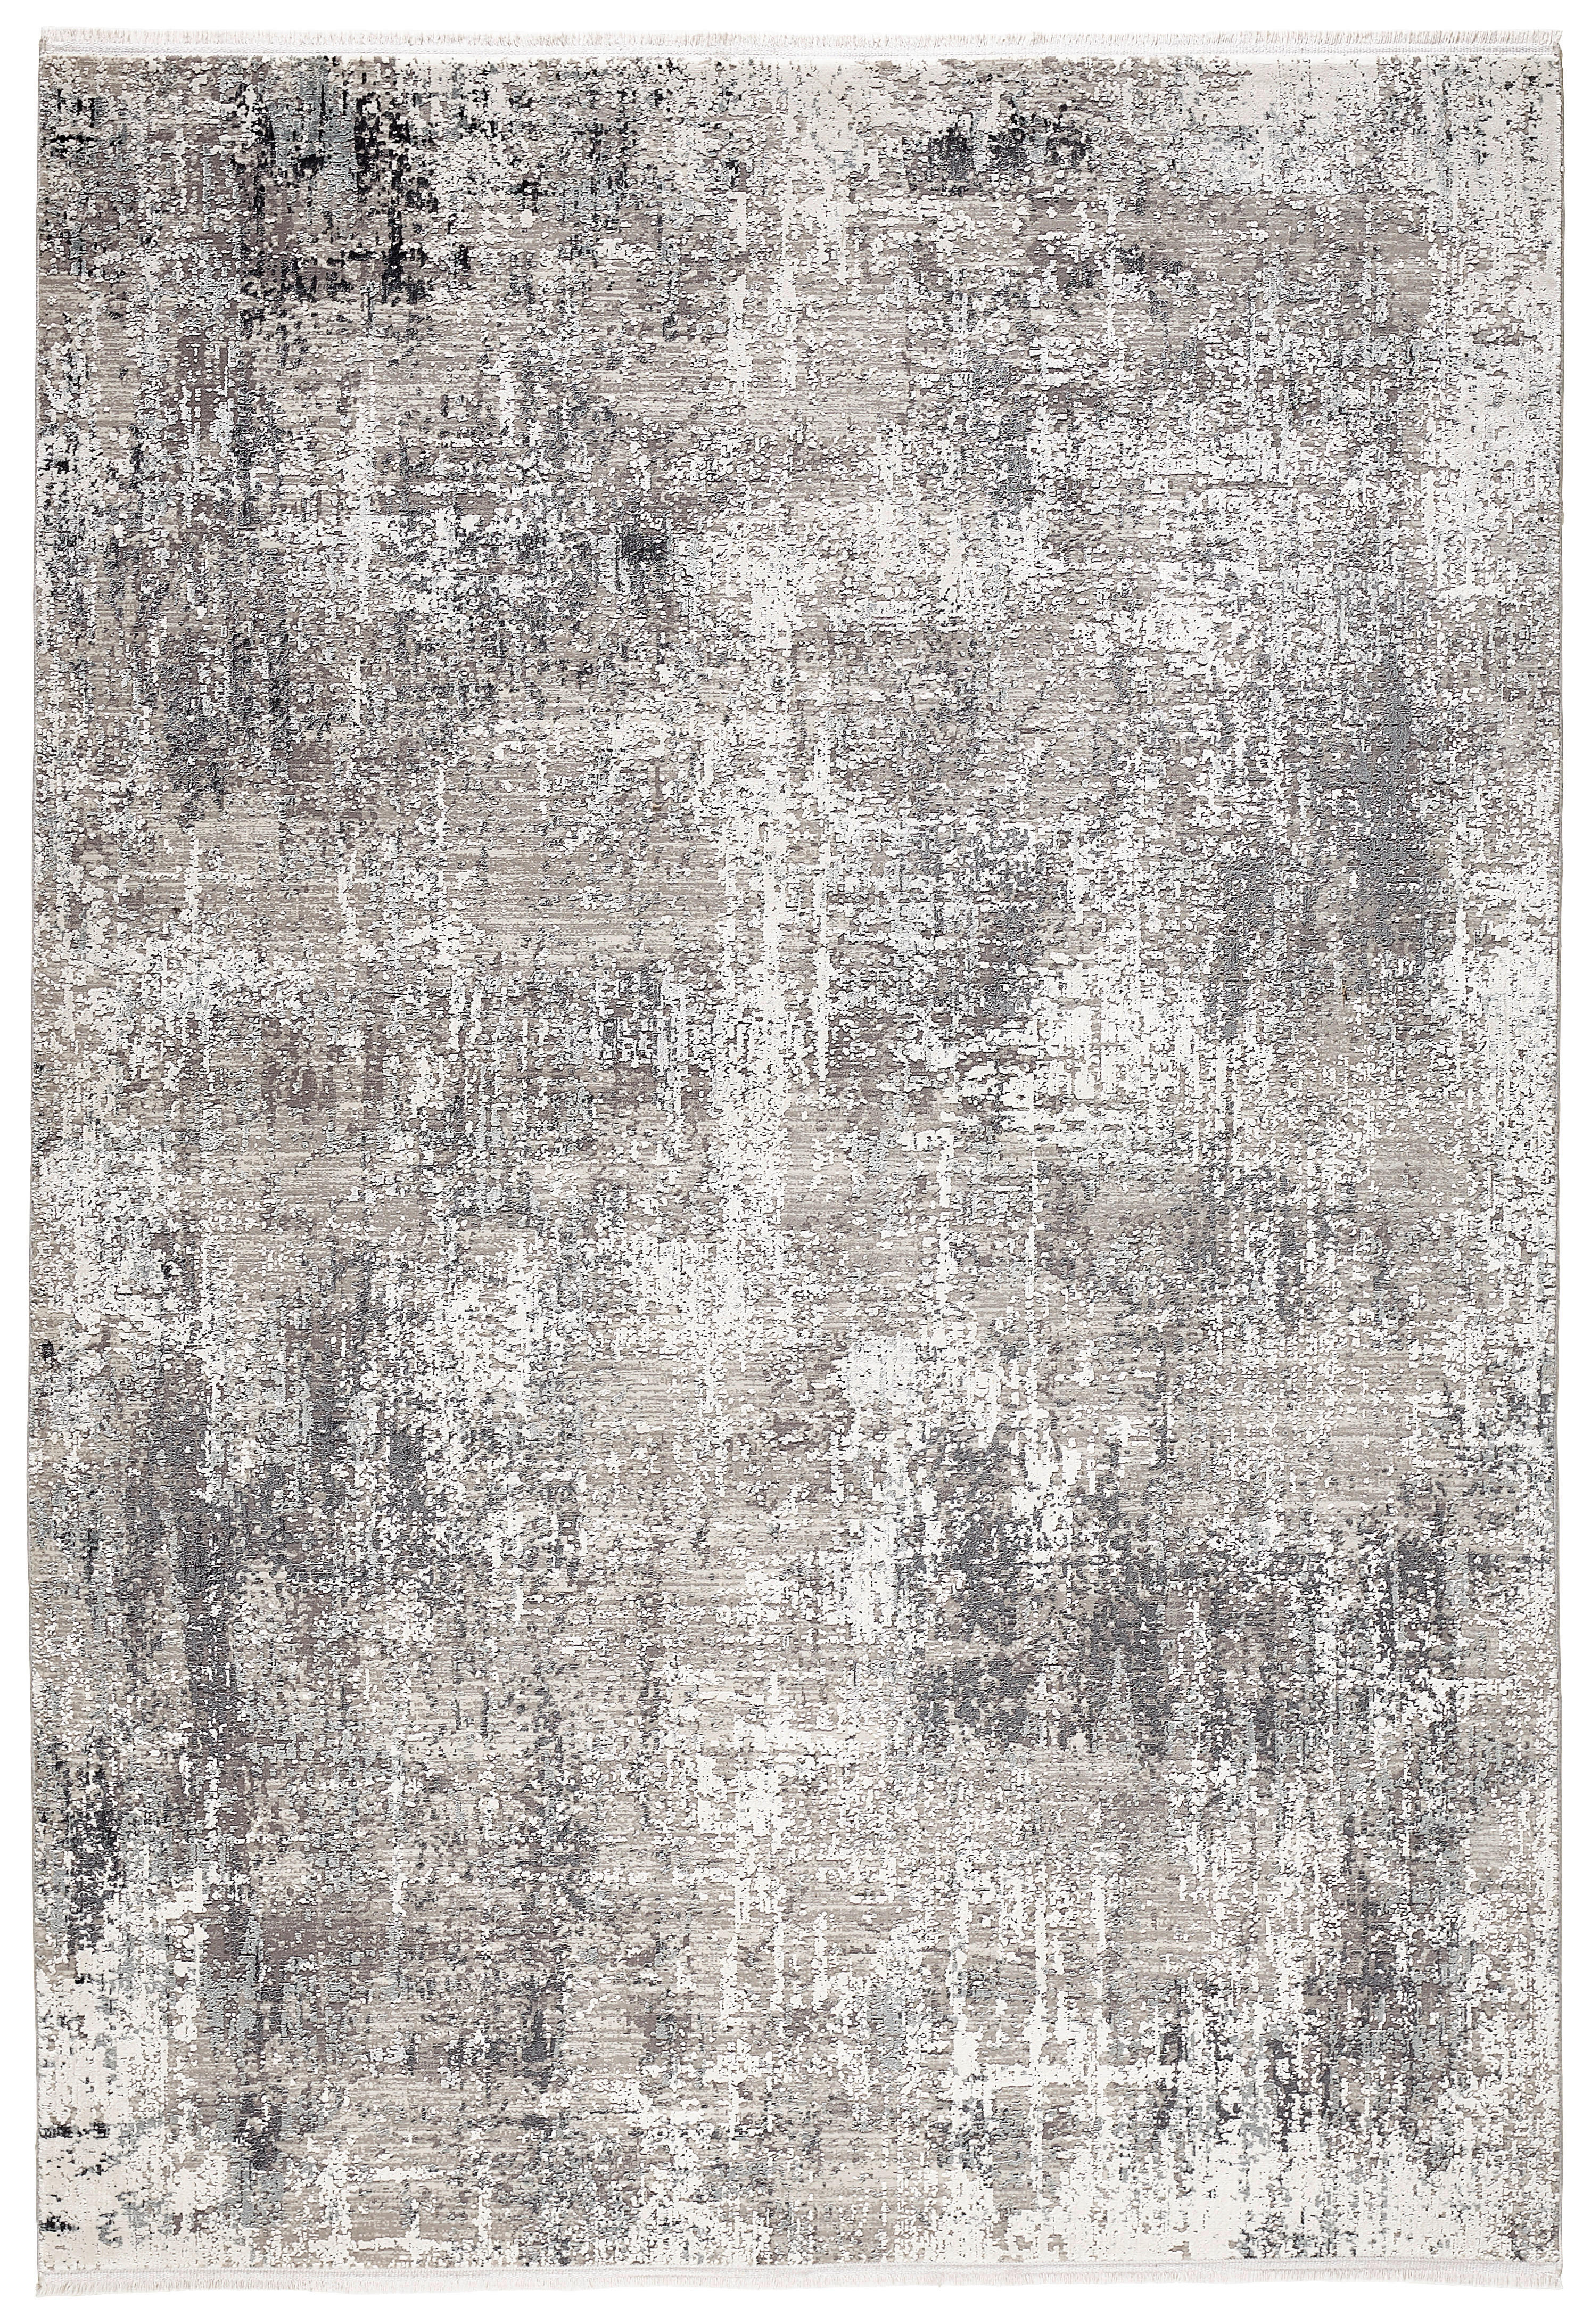 VINTAGE-TEPPICH  240/290 cm  Grau, Schwarz   - Schwarz/Grau, Design, Textil (240/290cm) - Dieter Knoll